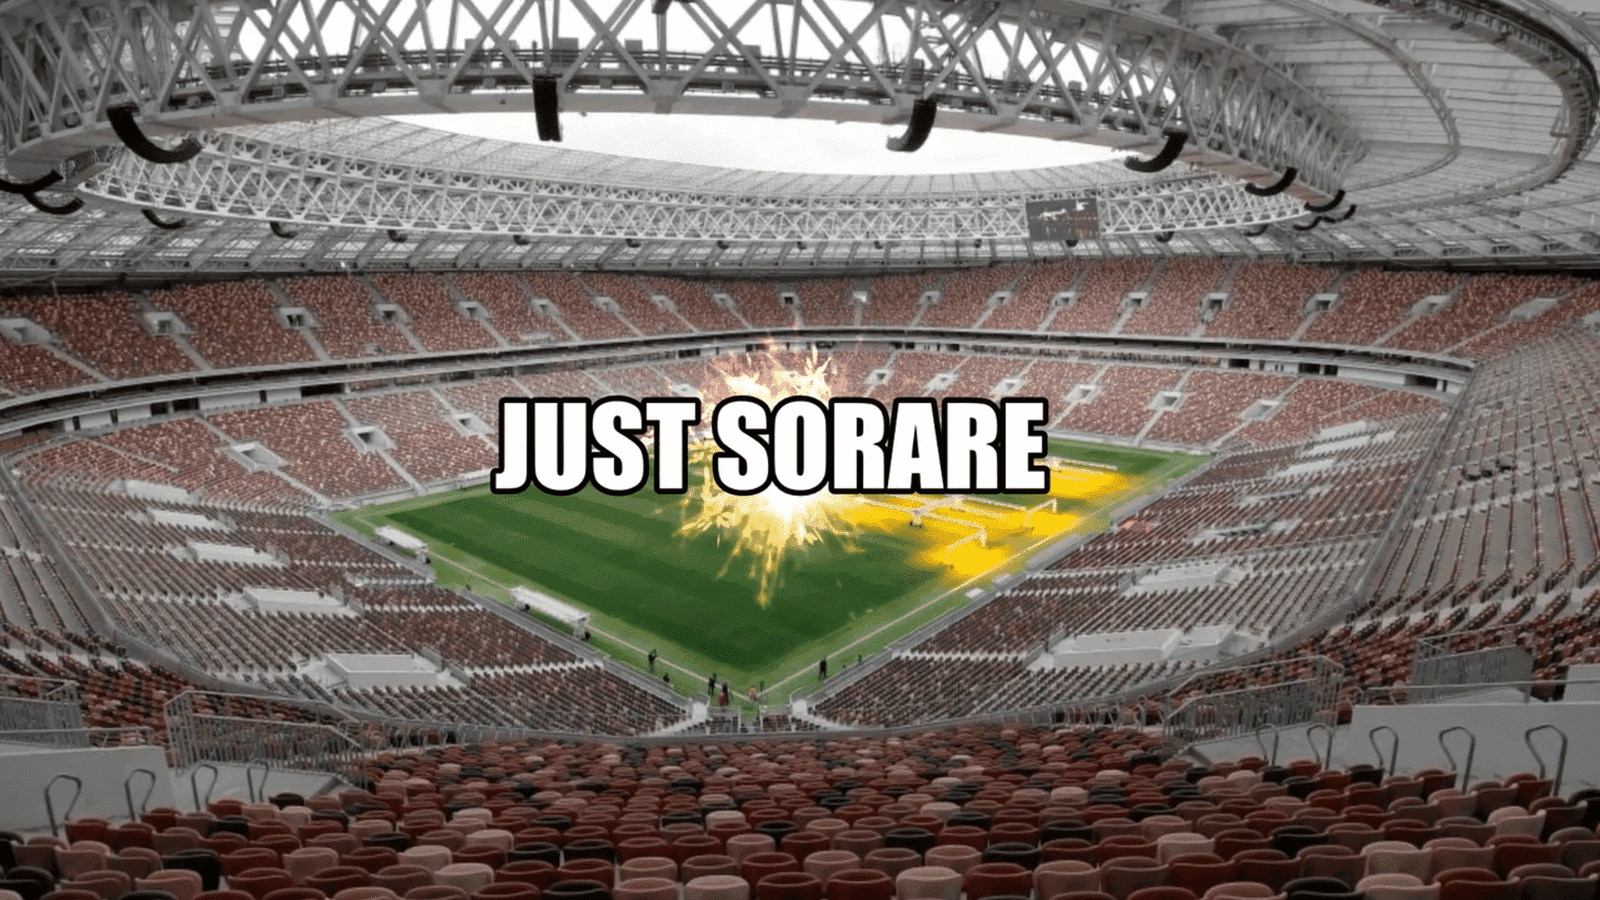 Sorare est un jeu de football fantastique basé sur la cryptographie qui a gagné en popularité en raison de sa capacité à être à la fois réaliste et rentable.